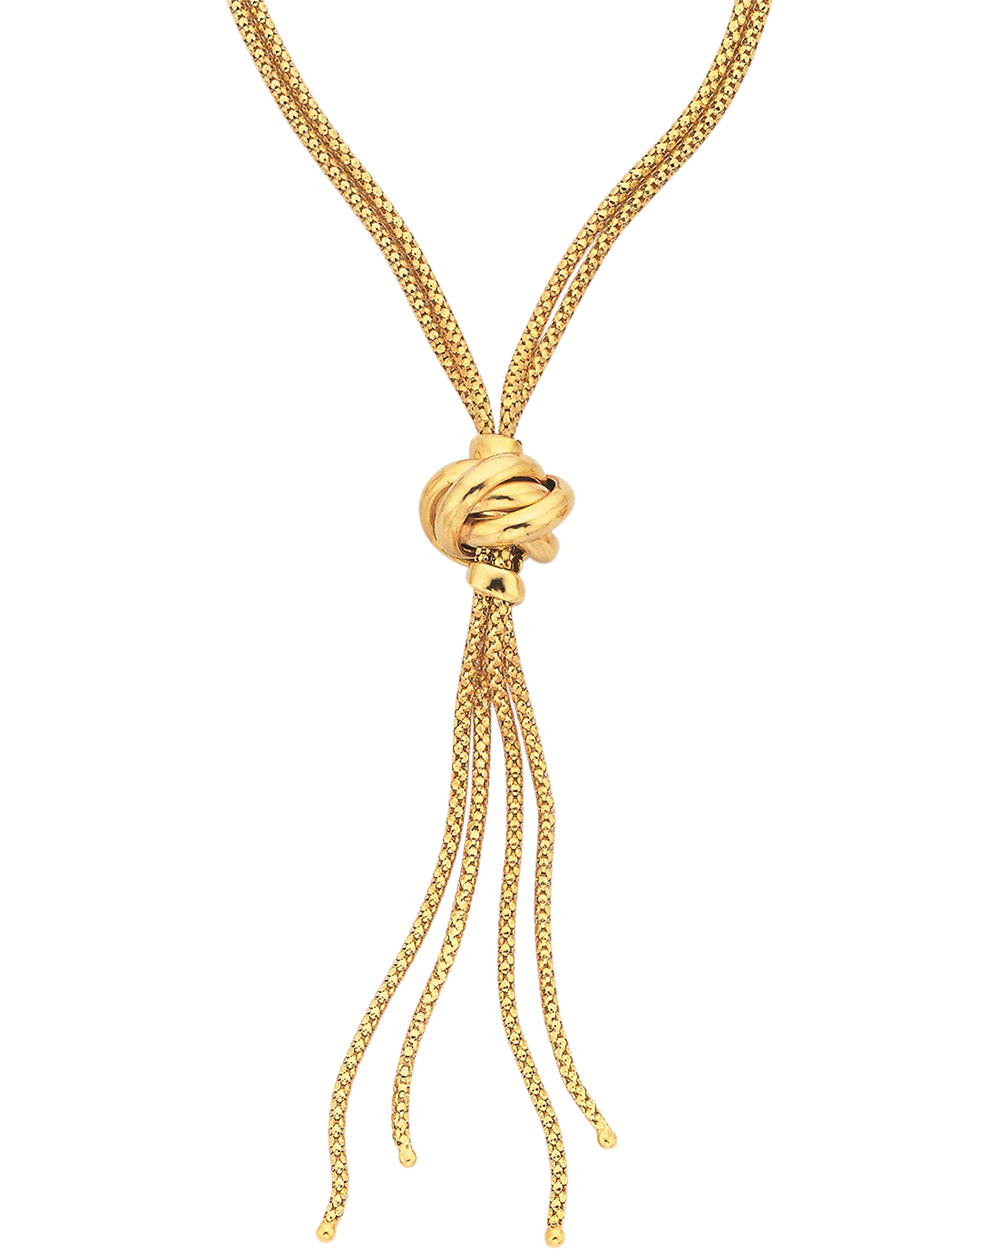 Stewart Dawsons necklace, $799